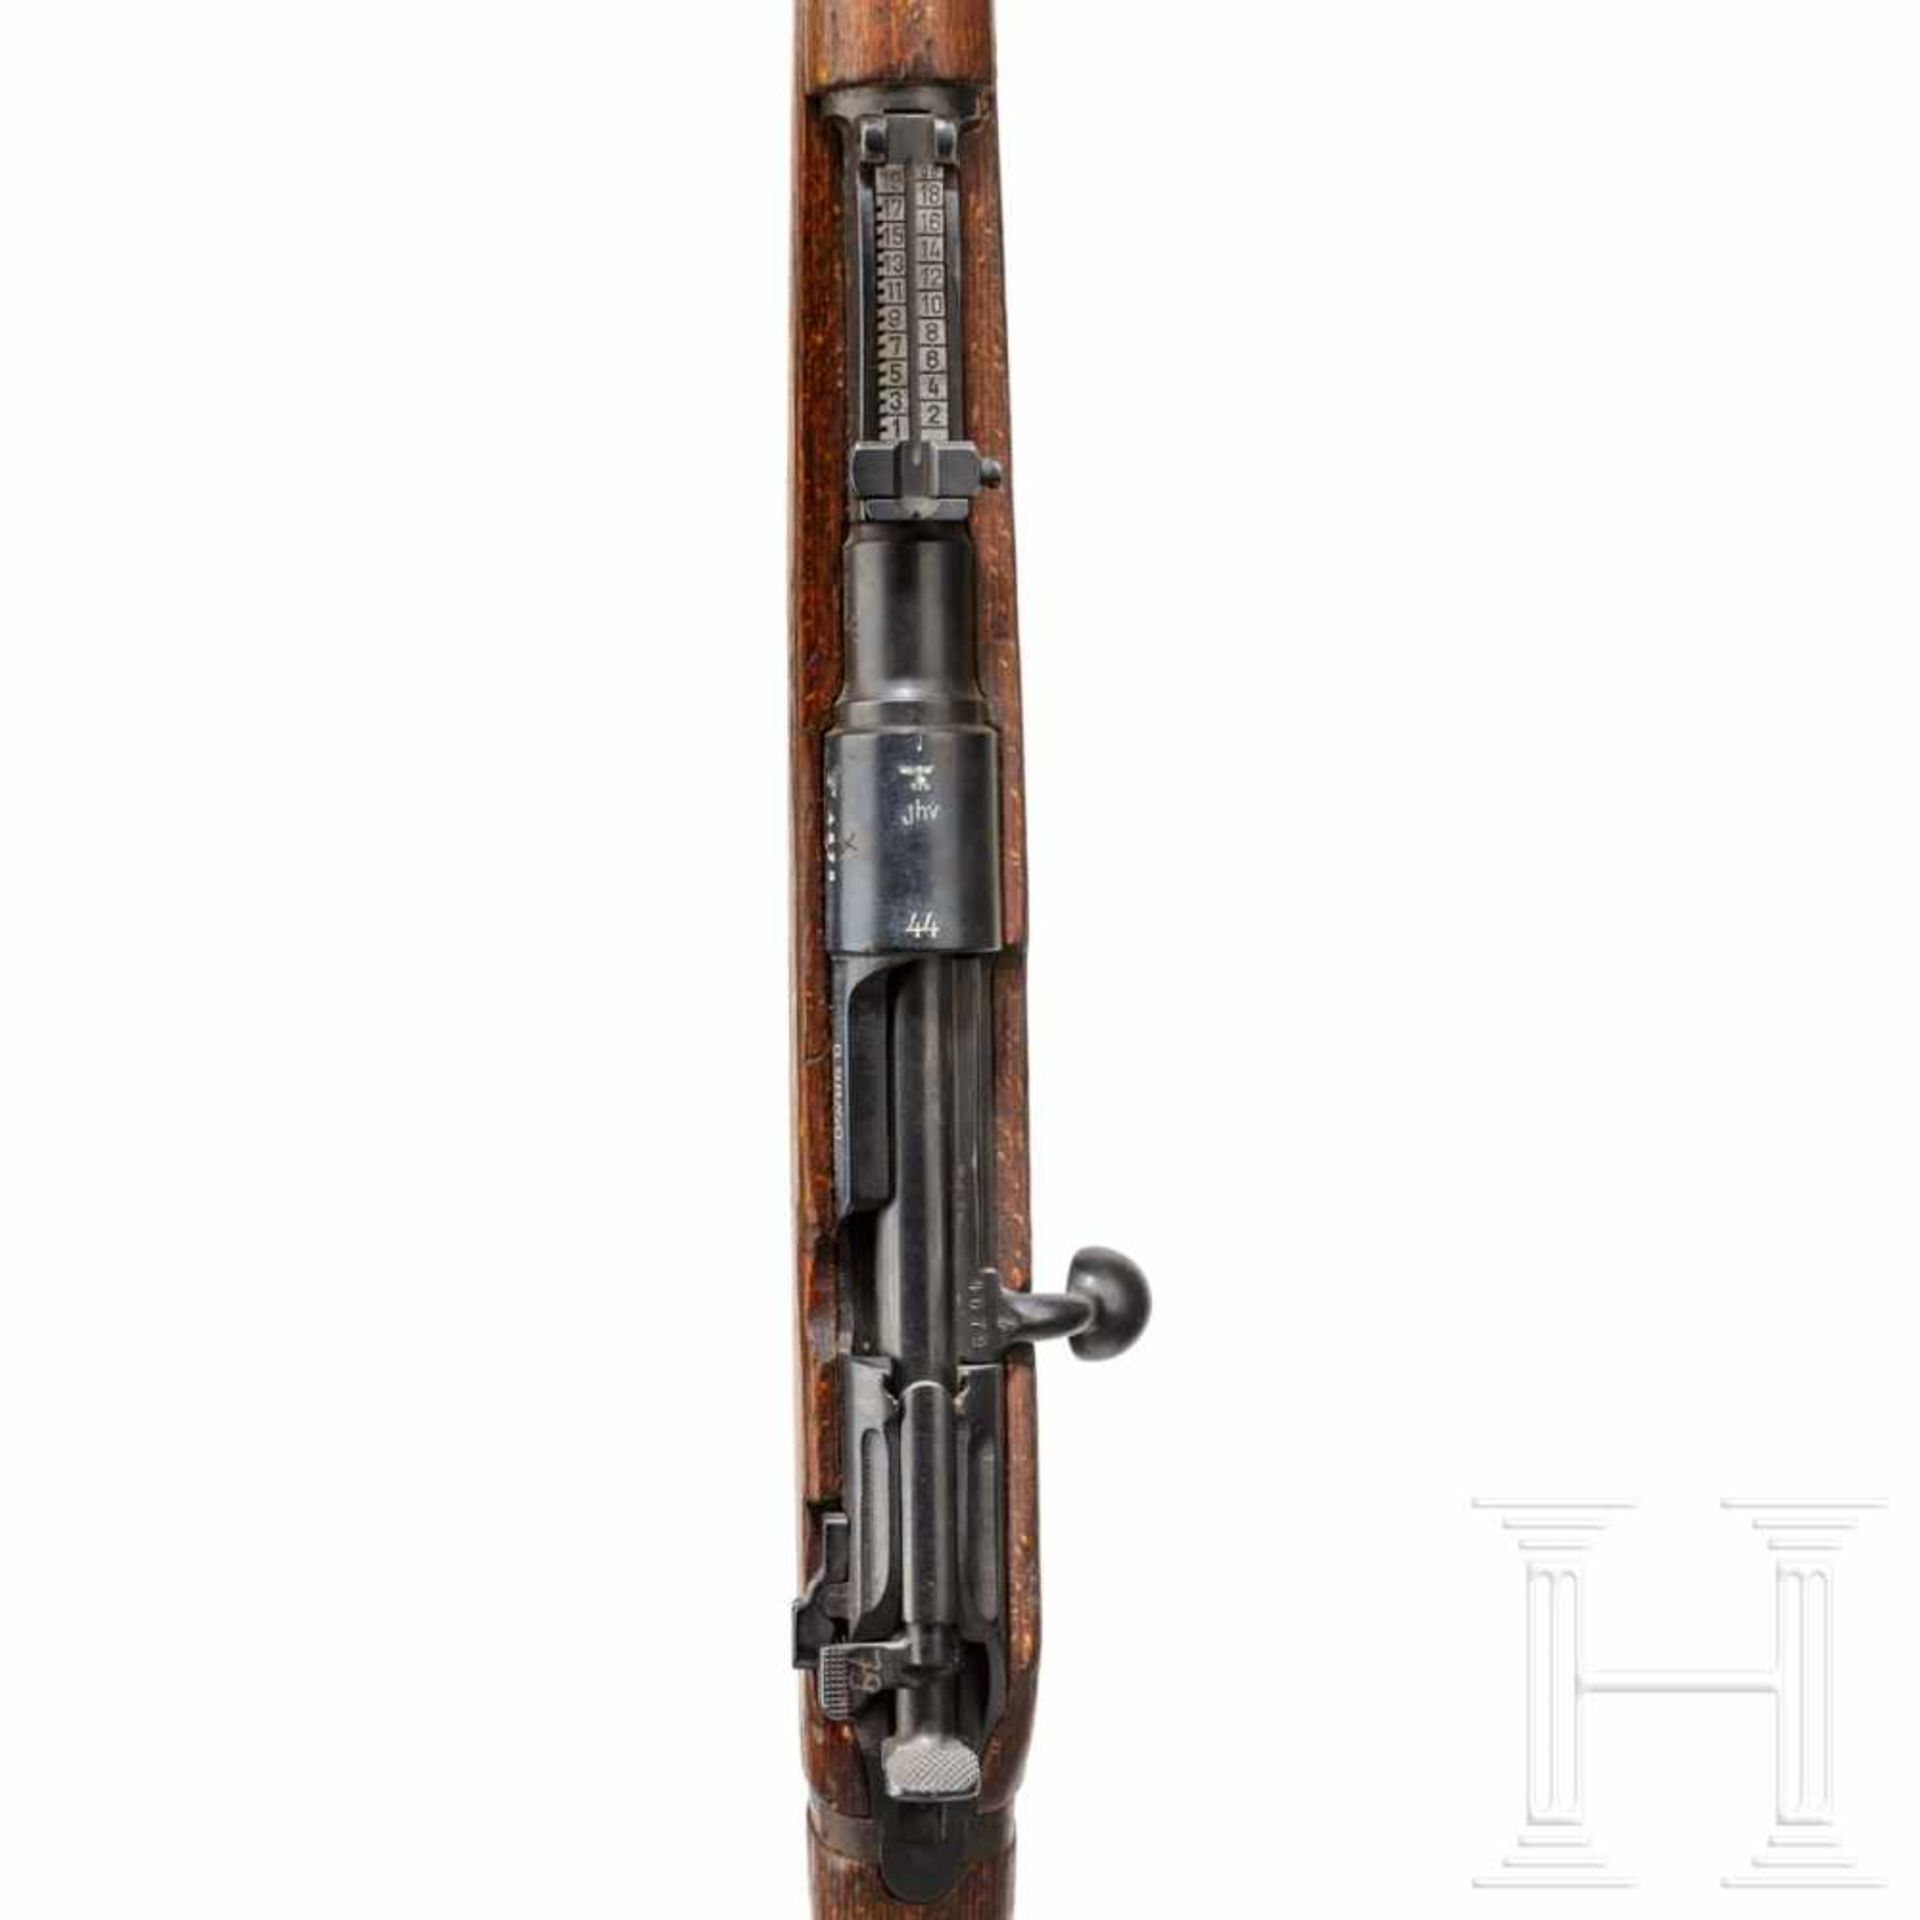 A rifle 98/40, code "jhv - 44"Kal. 8x57 IS, Nr. 4679b, nummerngleich. Lauf schwach matt. - Bild 3 aus 3